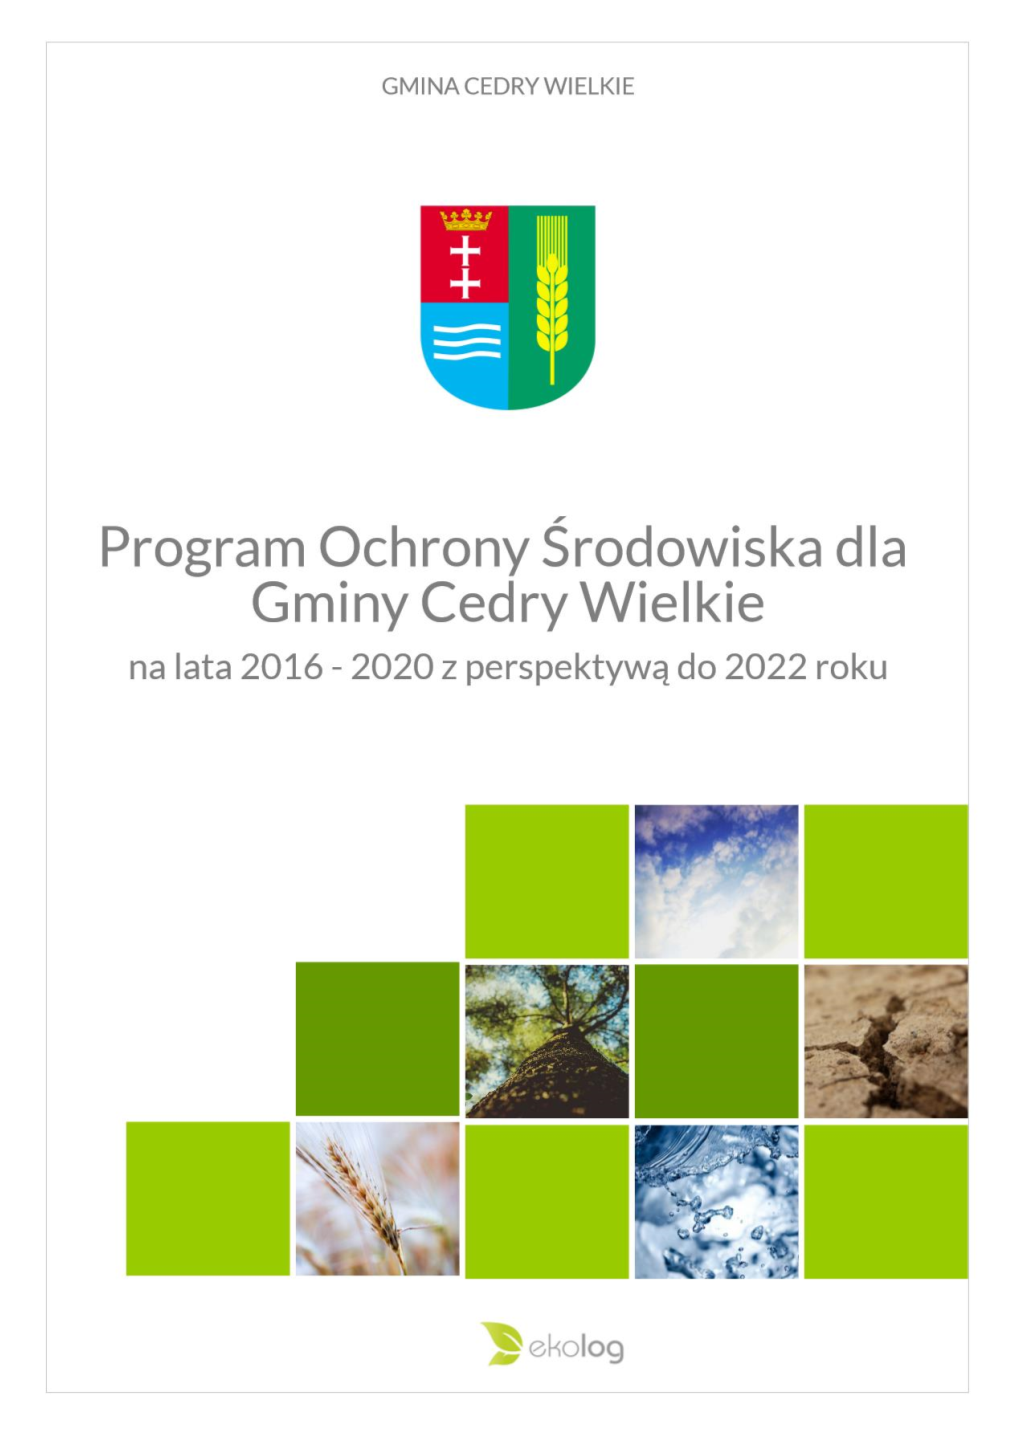 Program Ochrony Środowiska Dla Gminy Cedry Wielkie Na Lata 2016 – 2019 Z Perspektywą Do 2022 Roku Wykonany Przez Ekolog Sp